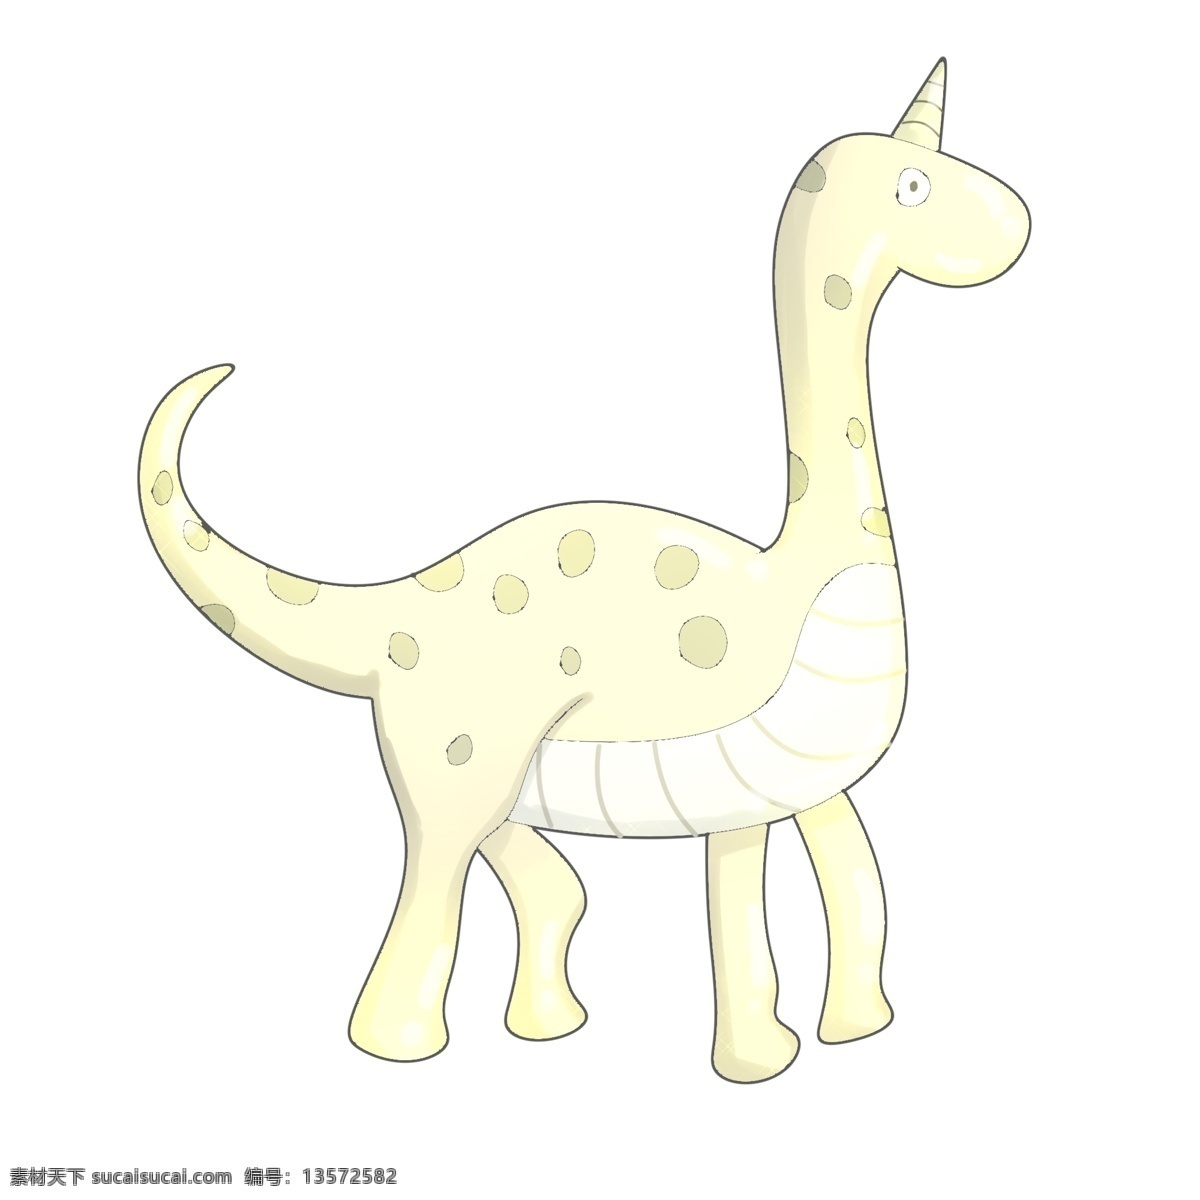 黄色 玩具 恐龙 插画 花纹小恐龙 巧通小恐龙 可爱独脚恐龙 野生动物 高大恐龙 黄色玩具恐龙